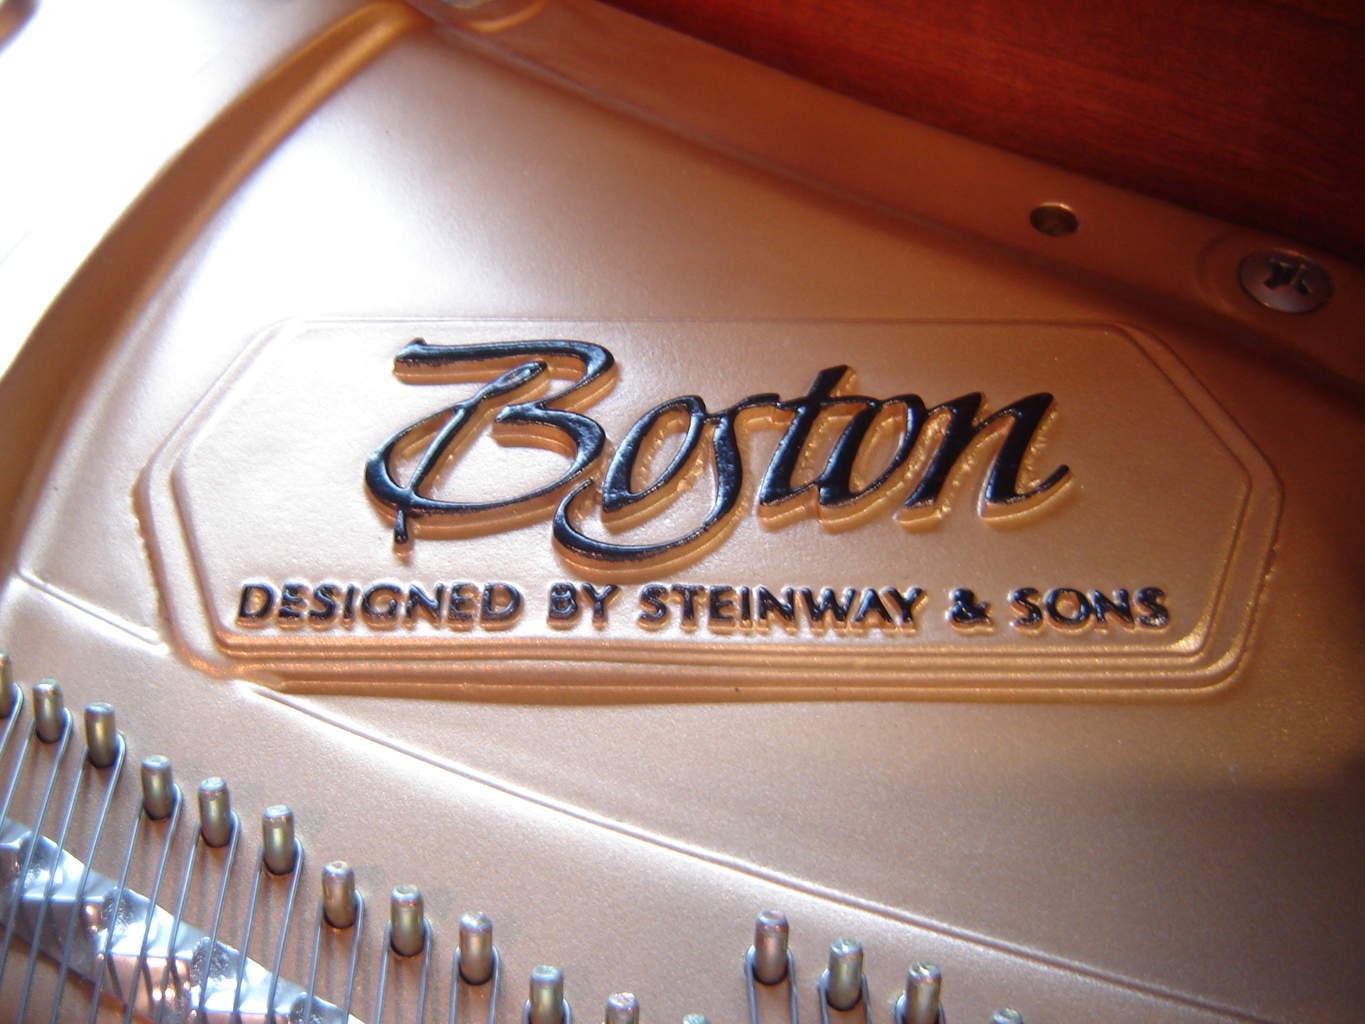 Boston Piano Logo - Boston Piano Model GP156, Built in 2008 on for $16400 - MERRIAM pianos